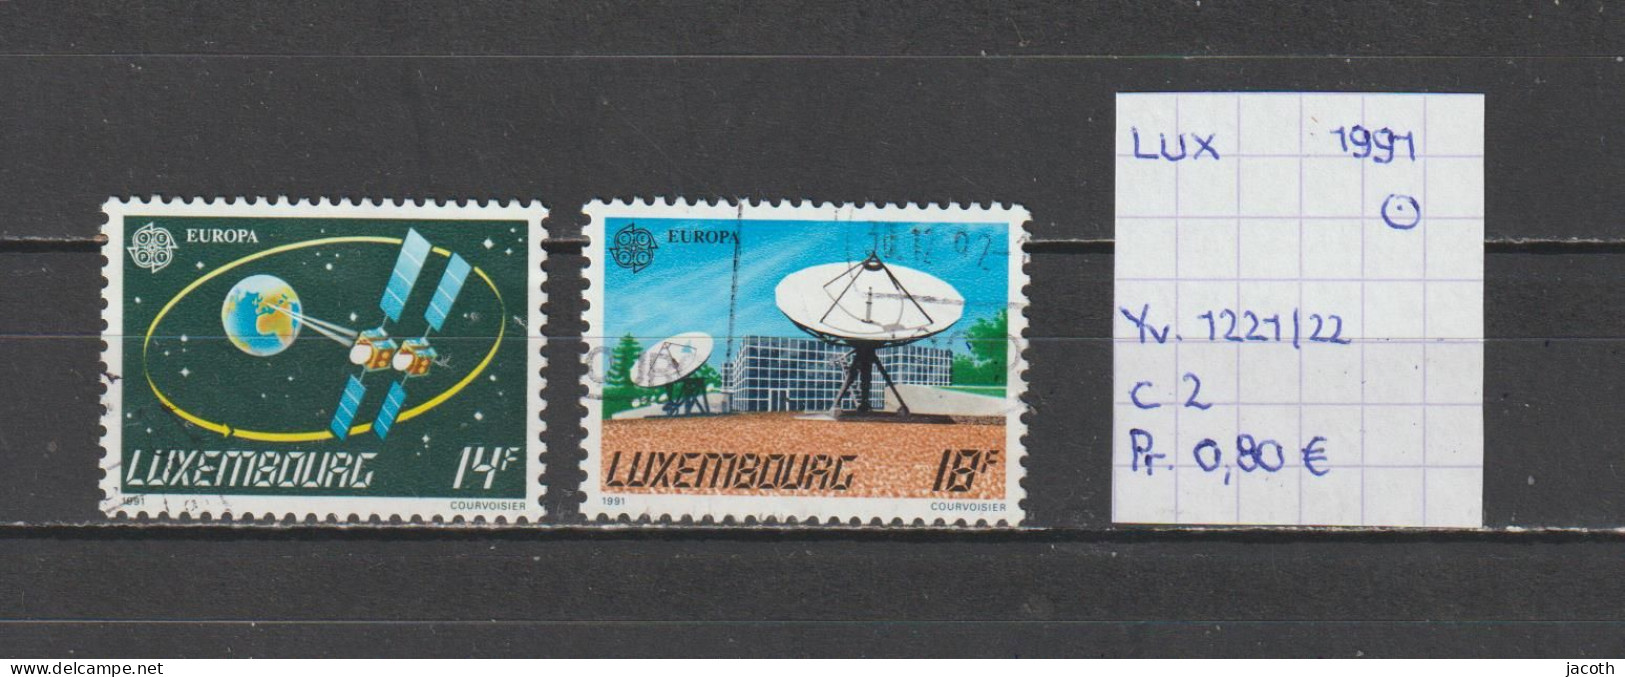 (TJ) Luxembourg 1991 - YT 1221/22 (gest./obl./used) - Oblitérés